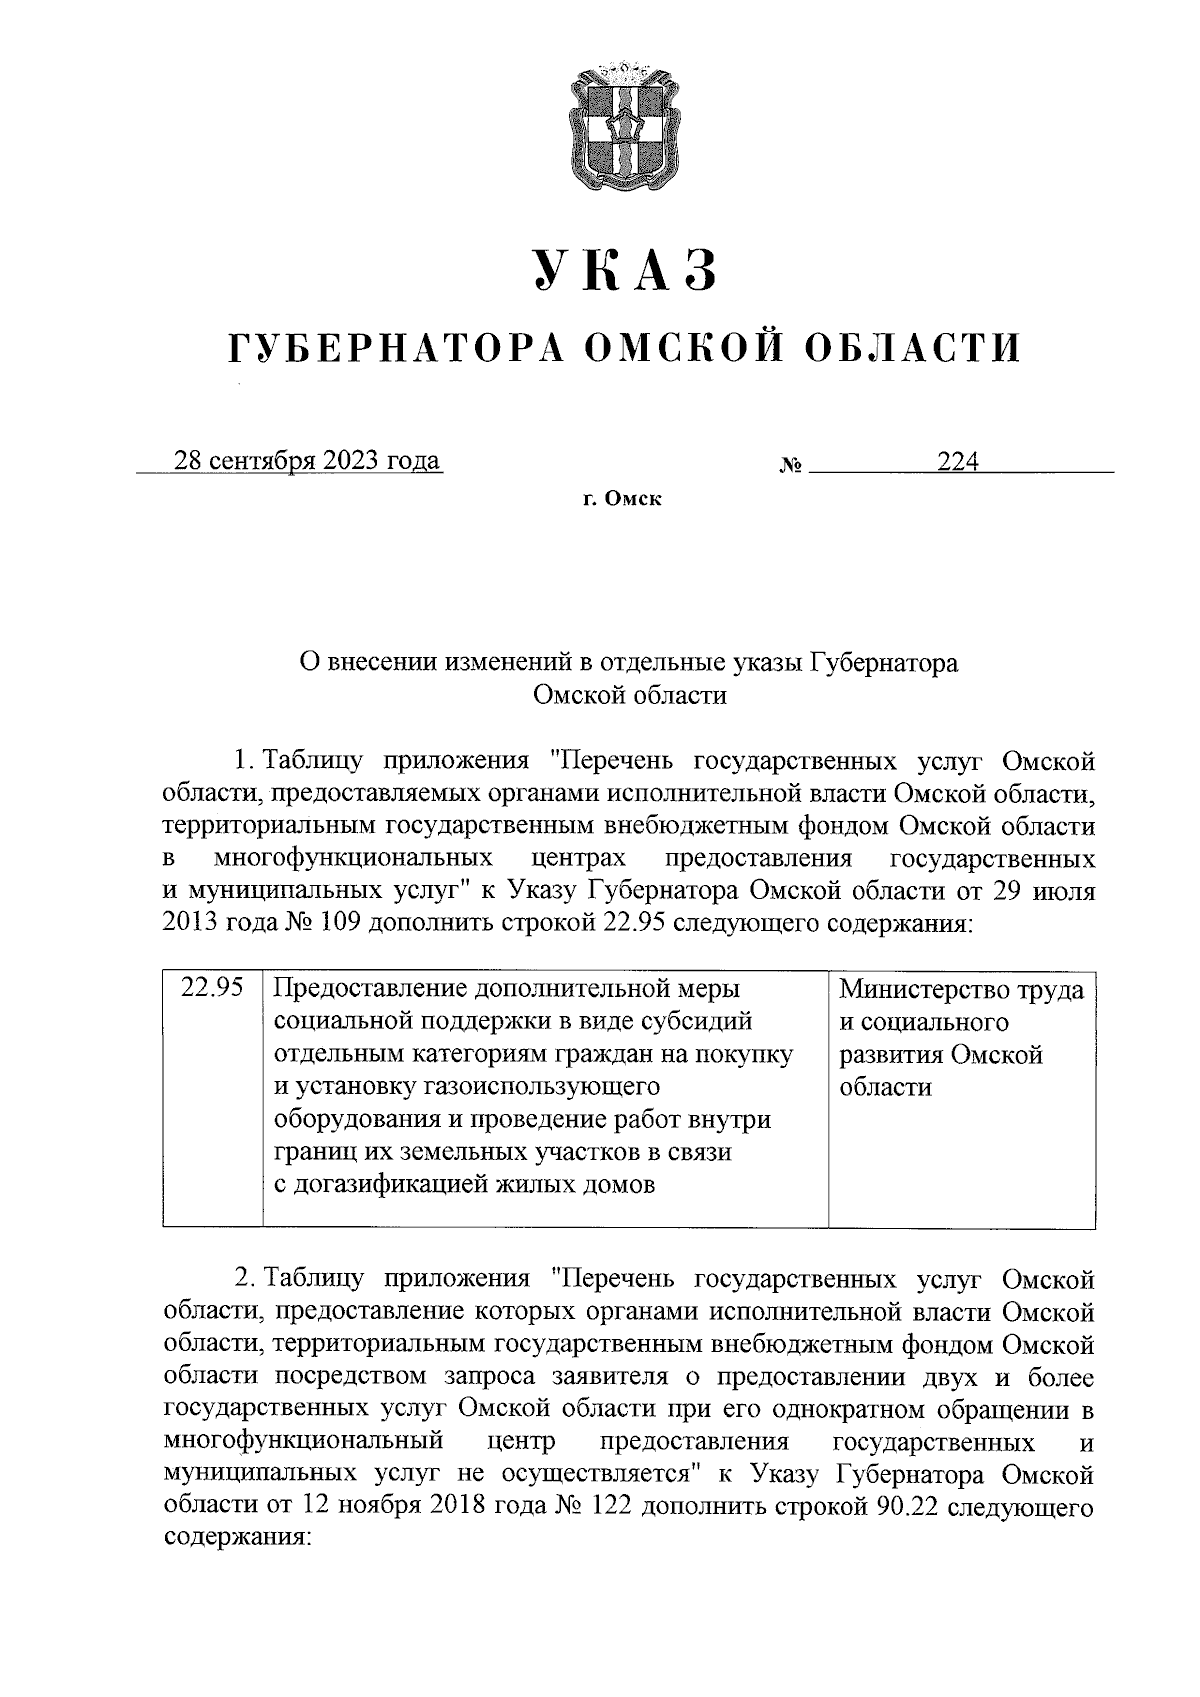 Указ Губернатора Омской области от 28.09.2023 № 224 ∙ Официальное опубликование правовых актов